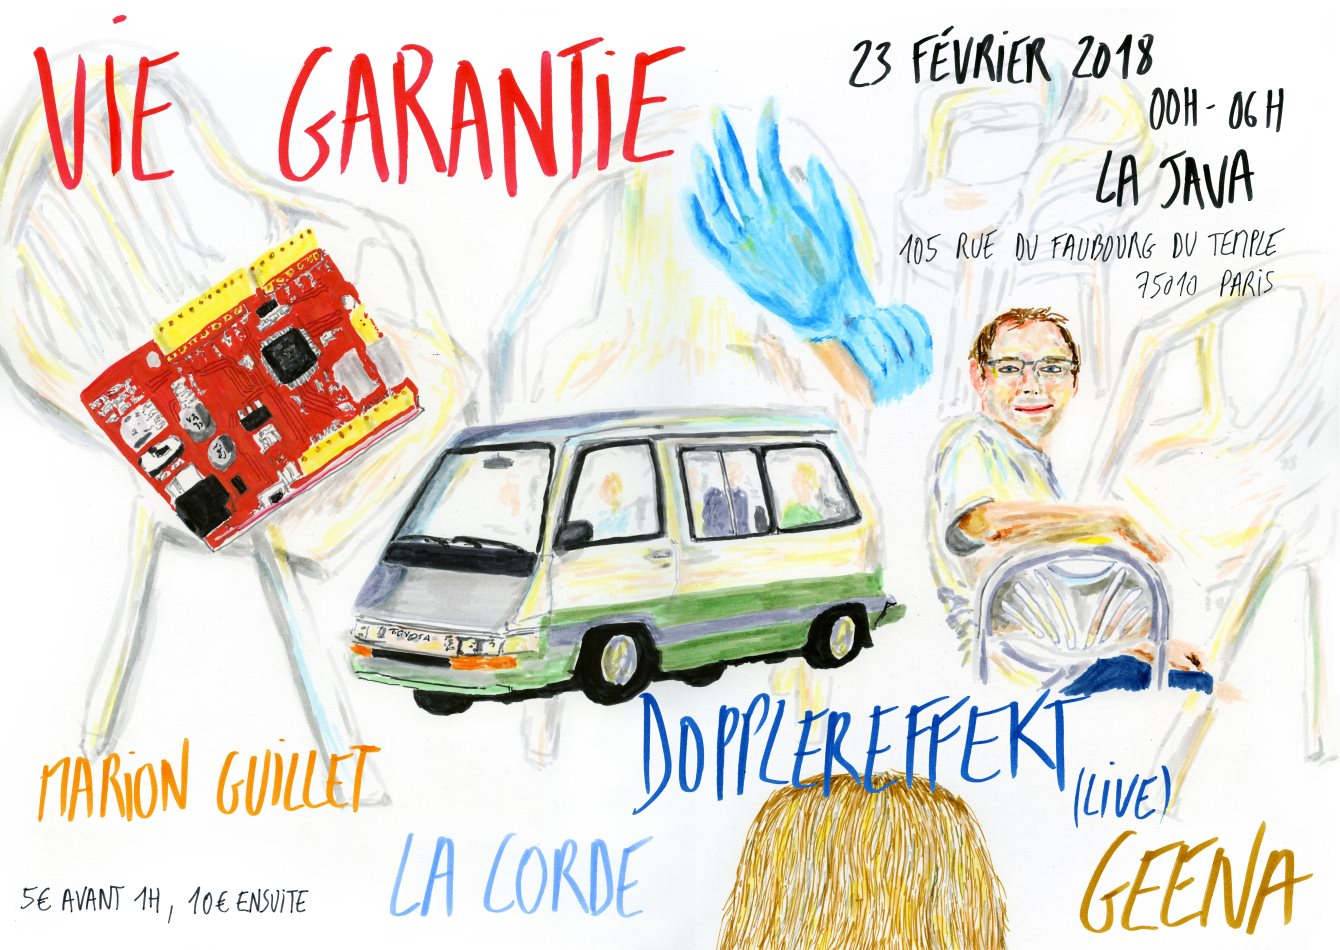 Vie Garantie with Geena, Dopplereffekt (Live), La Corde & Marion Guillet - Flyer front